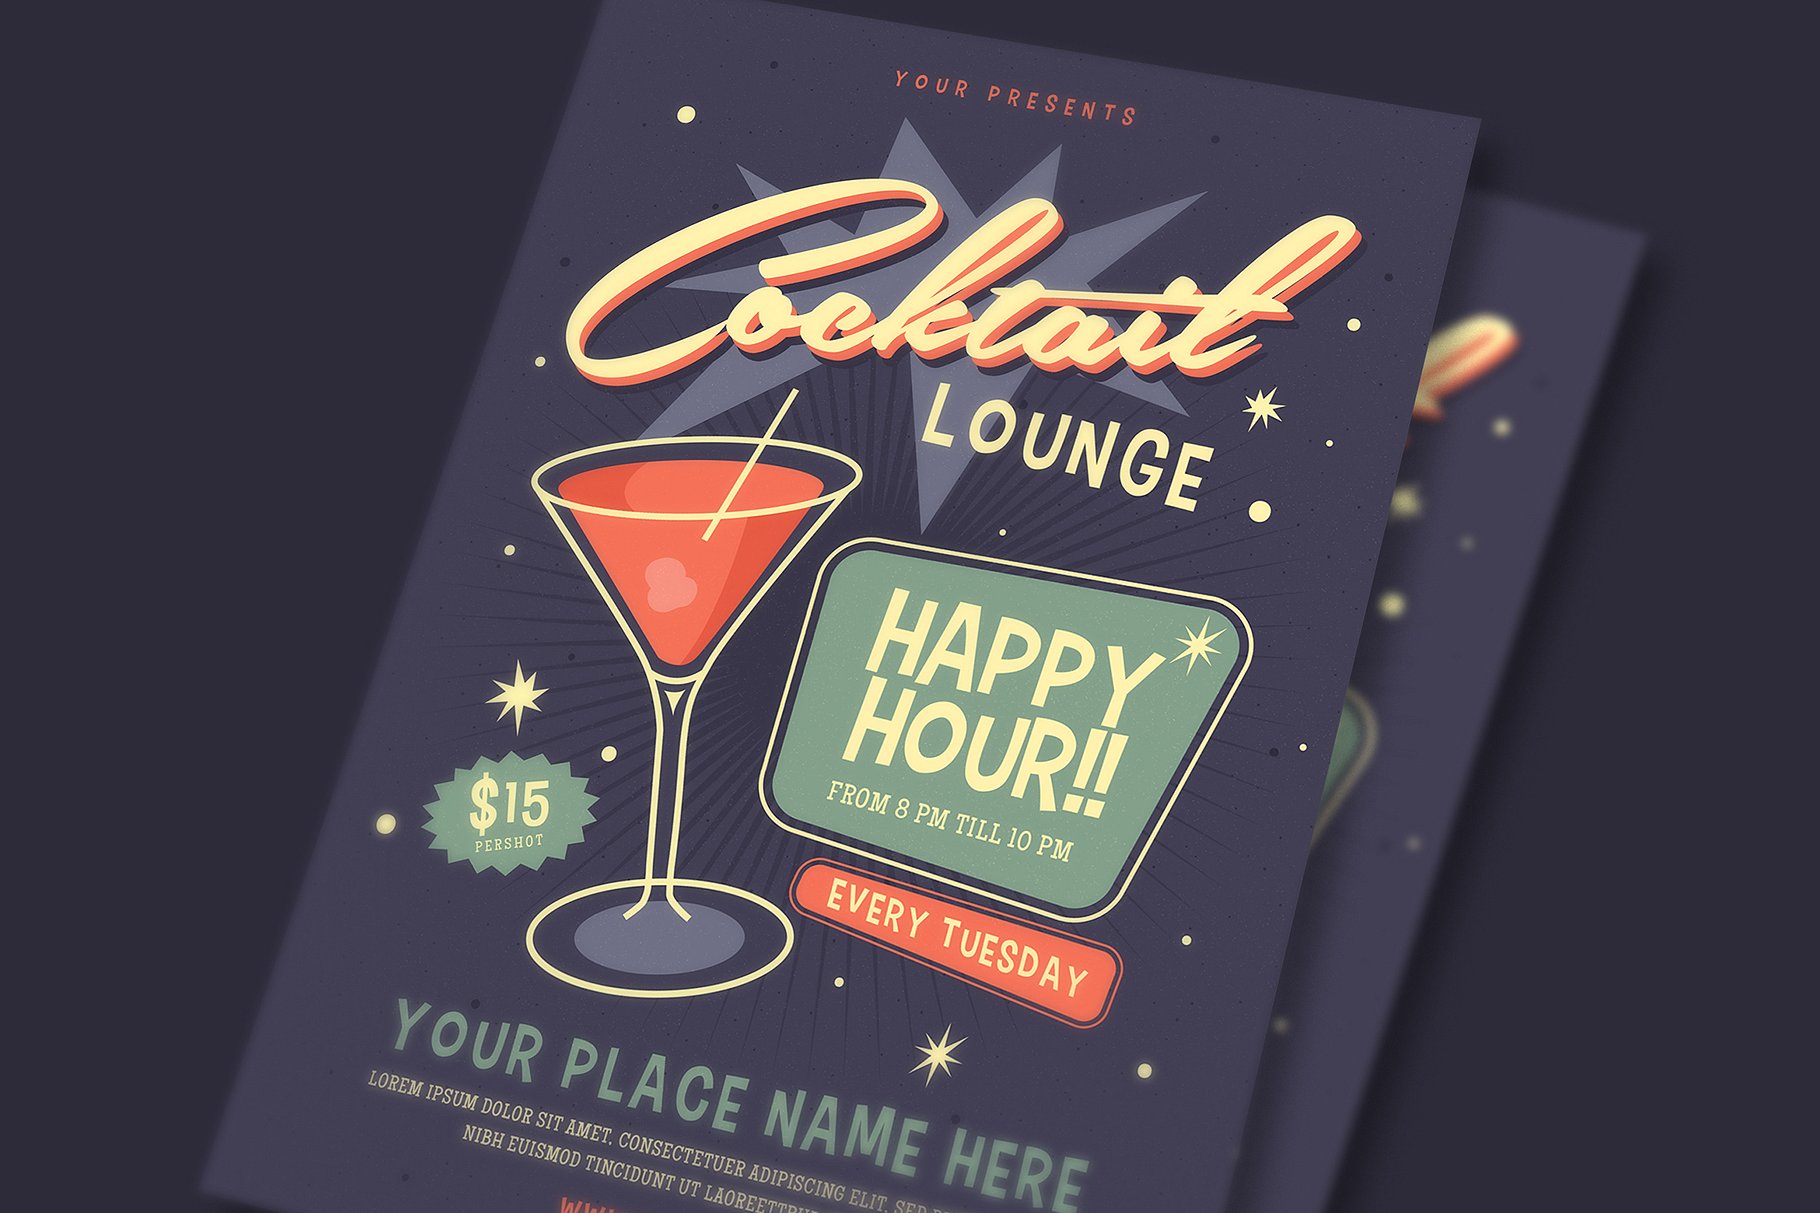 复古设计风格鸡尾酒酒会活动海报设计模板 Retro Cocktail Event Flyer插图(1)